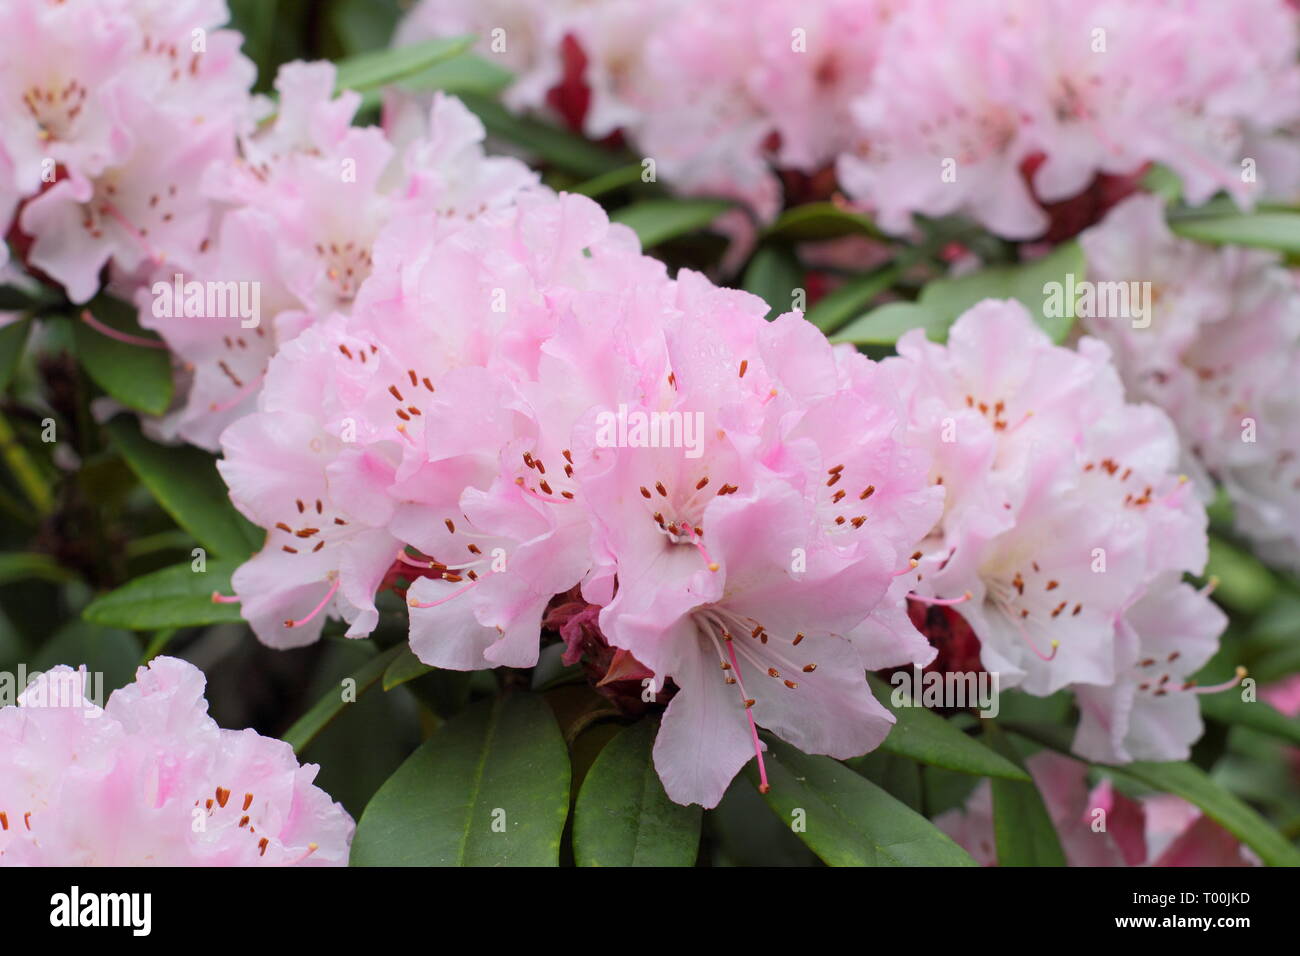 Rhododendron 'Christmas Cheer'. Fleurs de rhododendron floraison précoce, 'Christmas Cheer' dans un jardin anglais - fin février, UK Banque D'Images